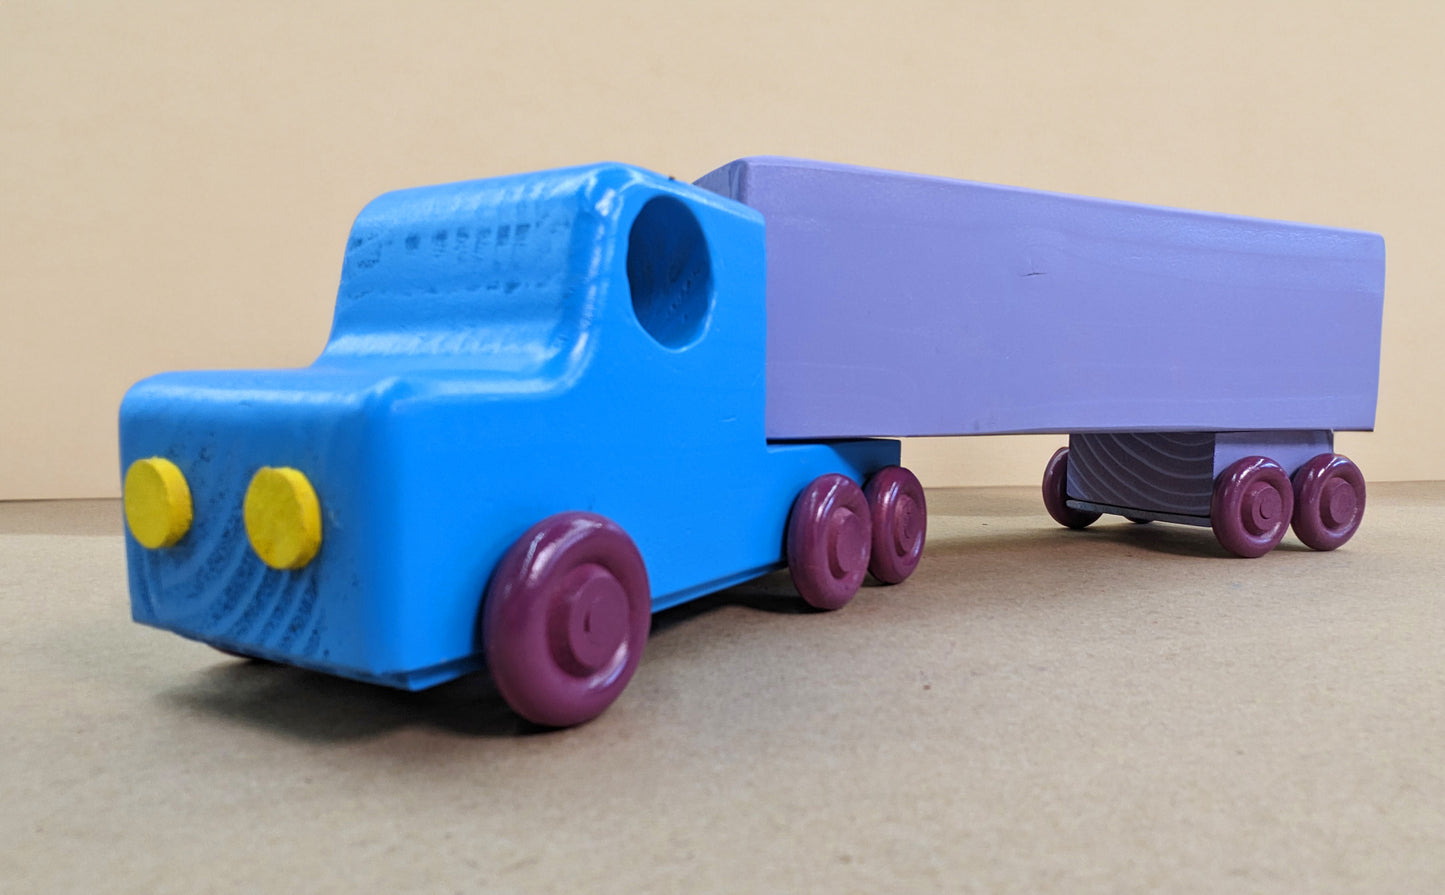 Modular Toy Truck (U.S. and METRIC)